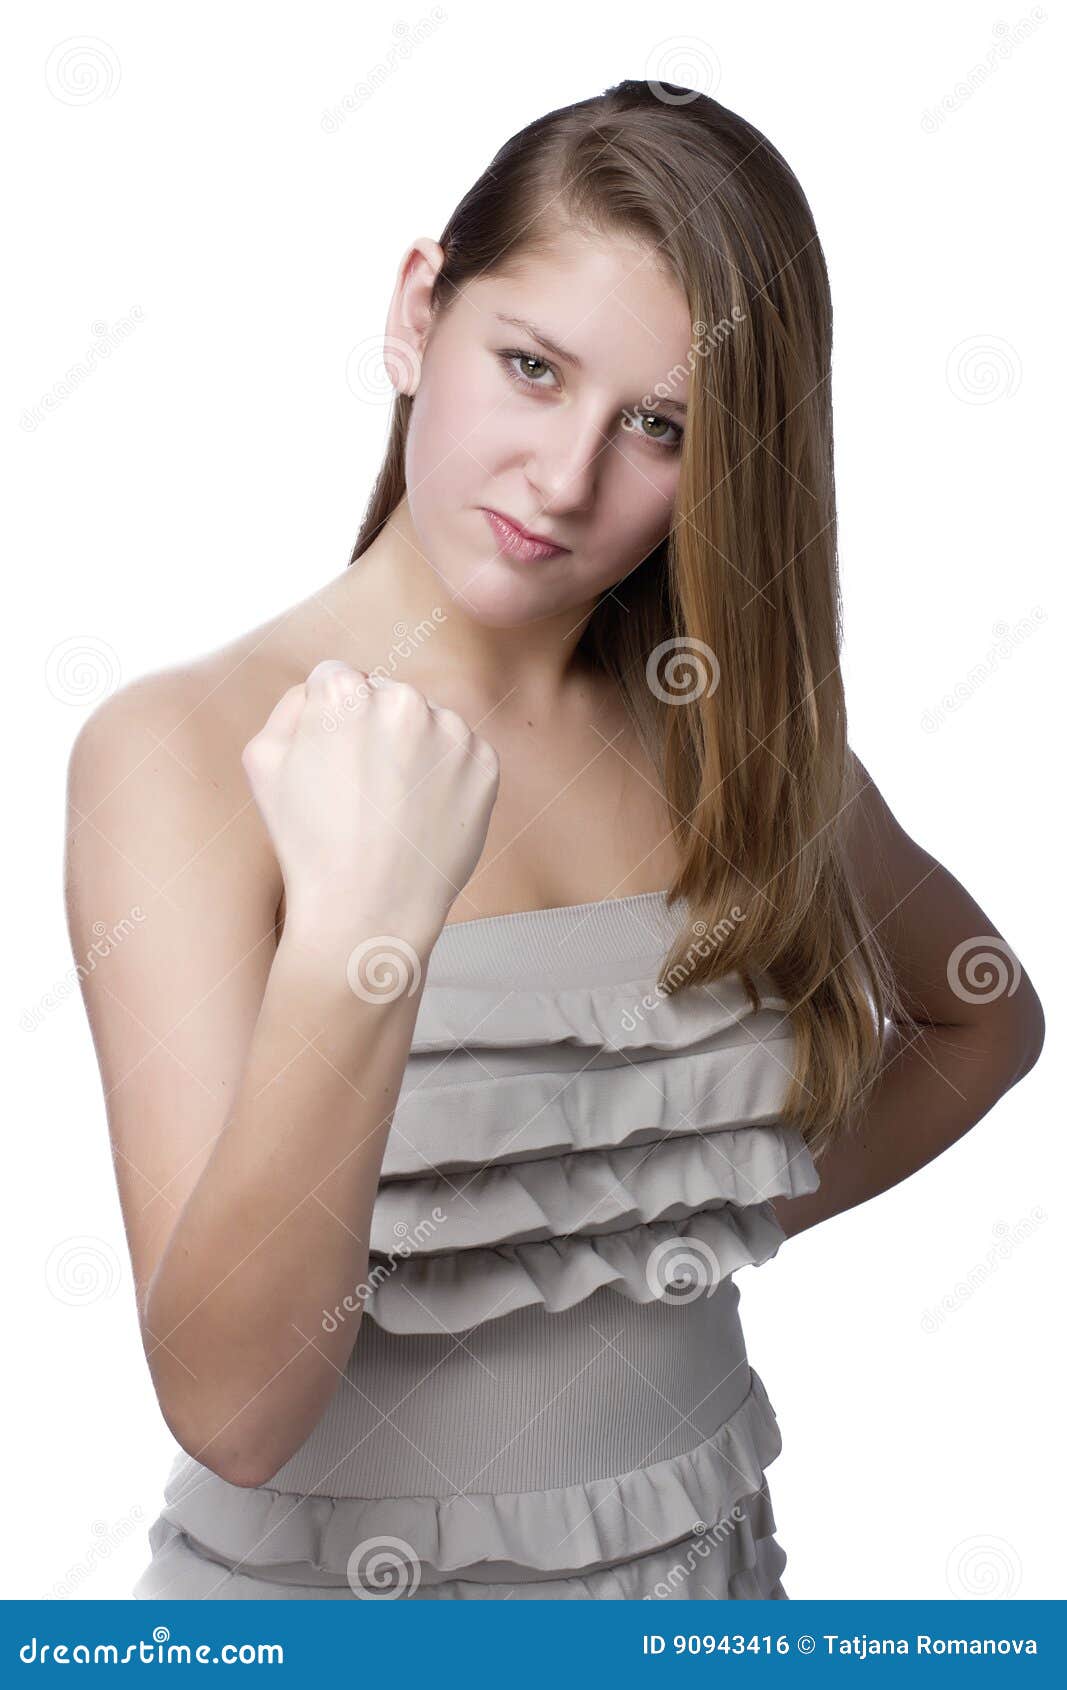 Lesbian teen fist